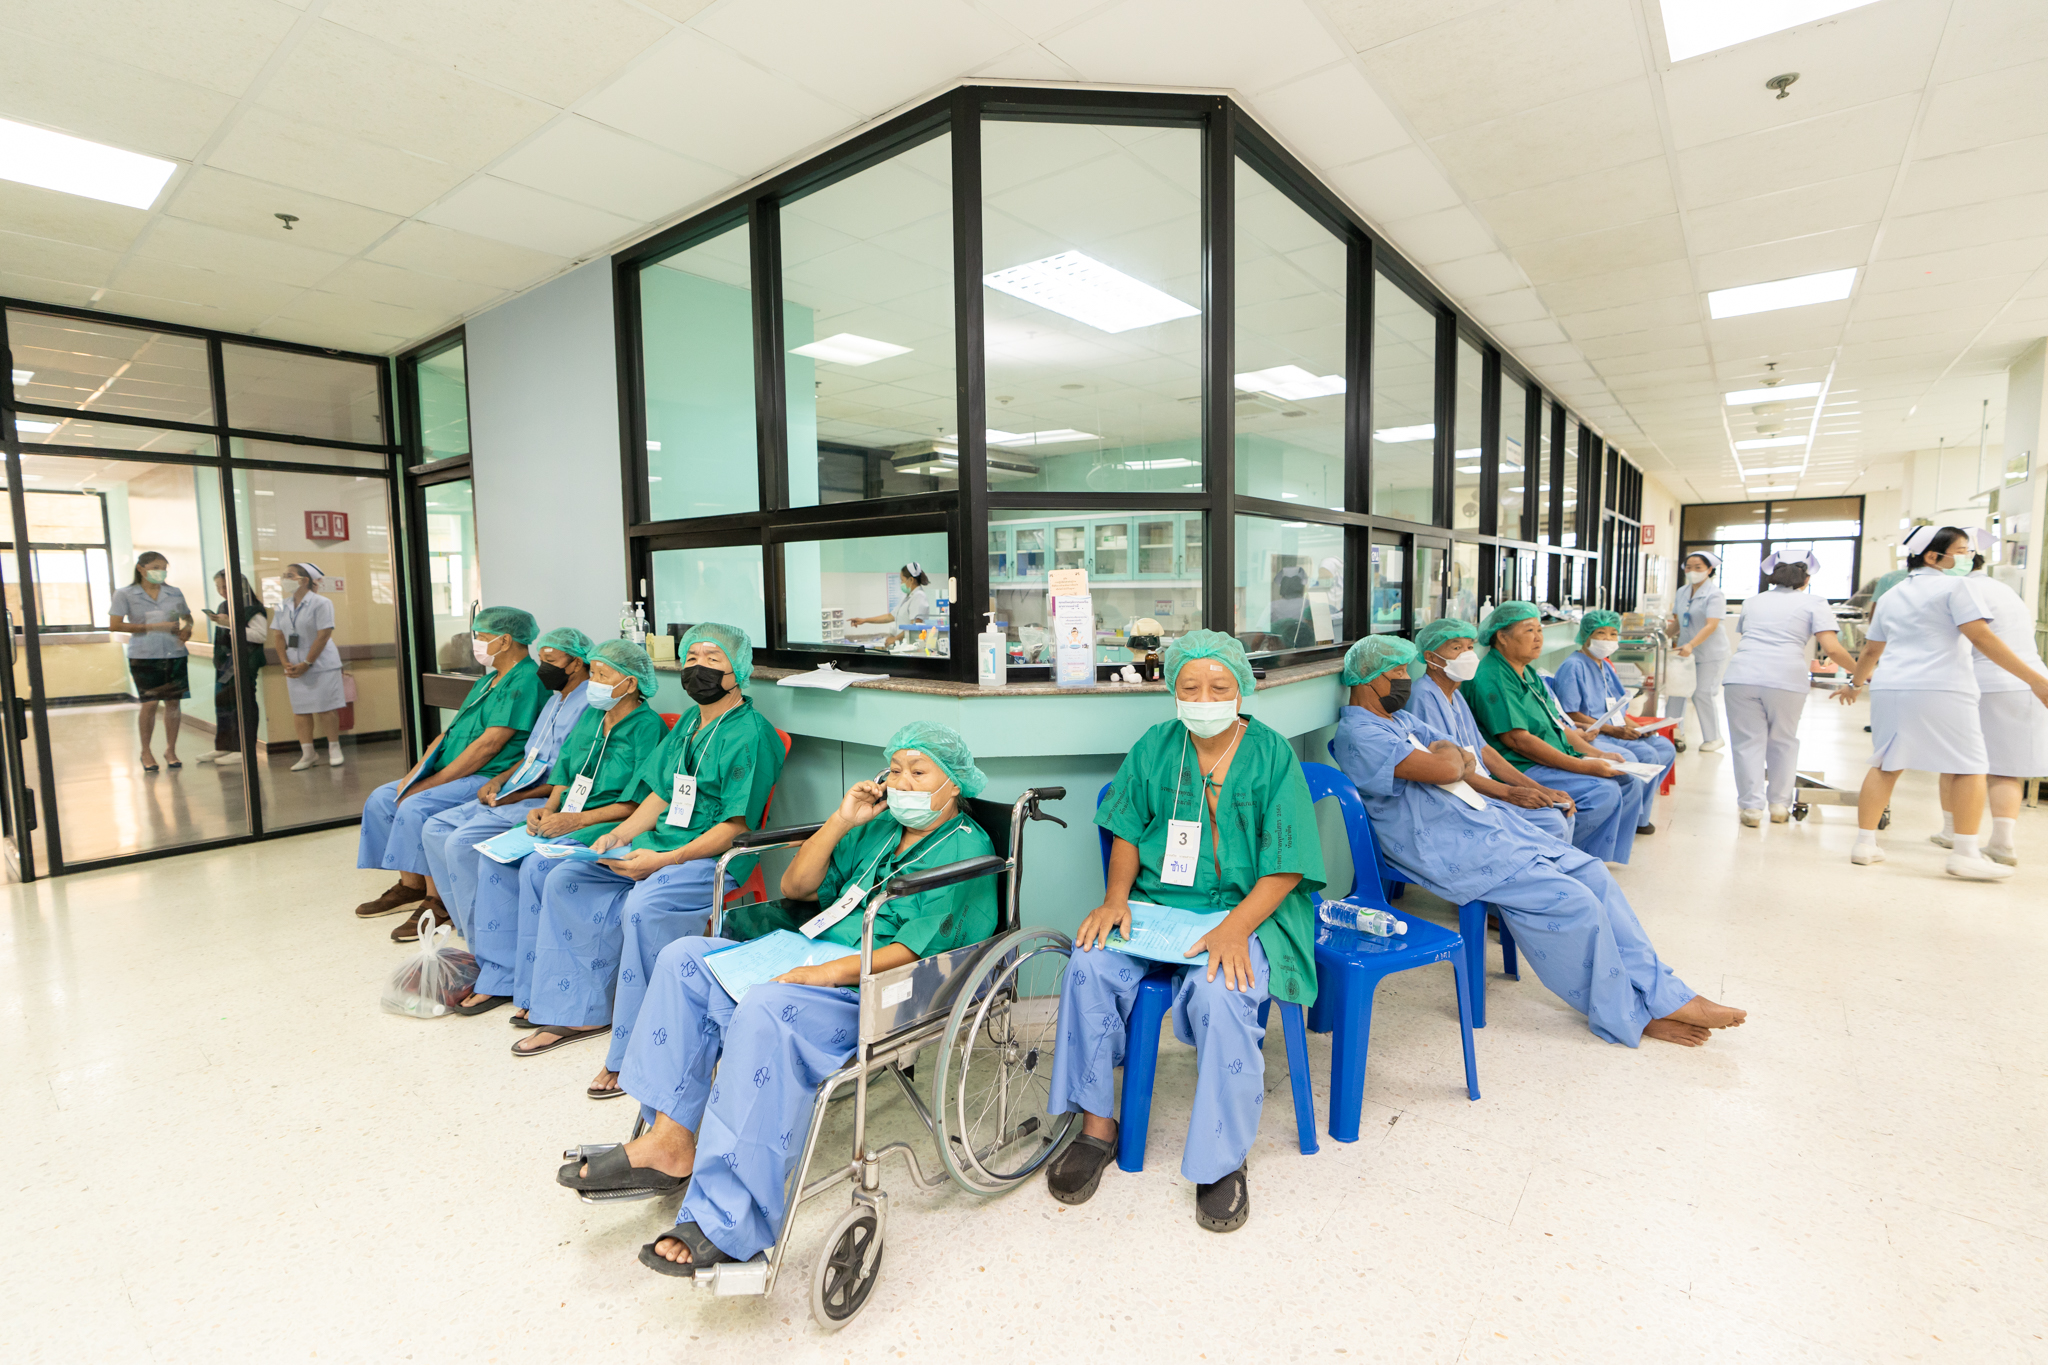 โครงการ “ราษฎรสุขใจ พลานามัยสมบูรณ์ แพทย์พระราชทาน” โดยสํานักงานทรัพย์สินพระมหากษัตริย์ ร่วมกับ คณะแพทยศาสตร์โรงพยาบาลรามาธิบดี มหาวิทยาลัยมหิดล และหน่วยงานภาคี ณ โรงพยาบาลพุทธโสธร จังหวัดฉะเชิงเทรา